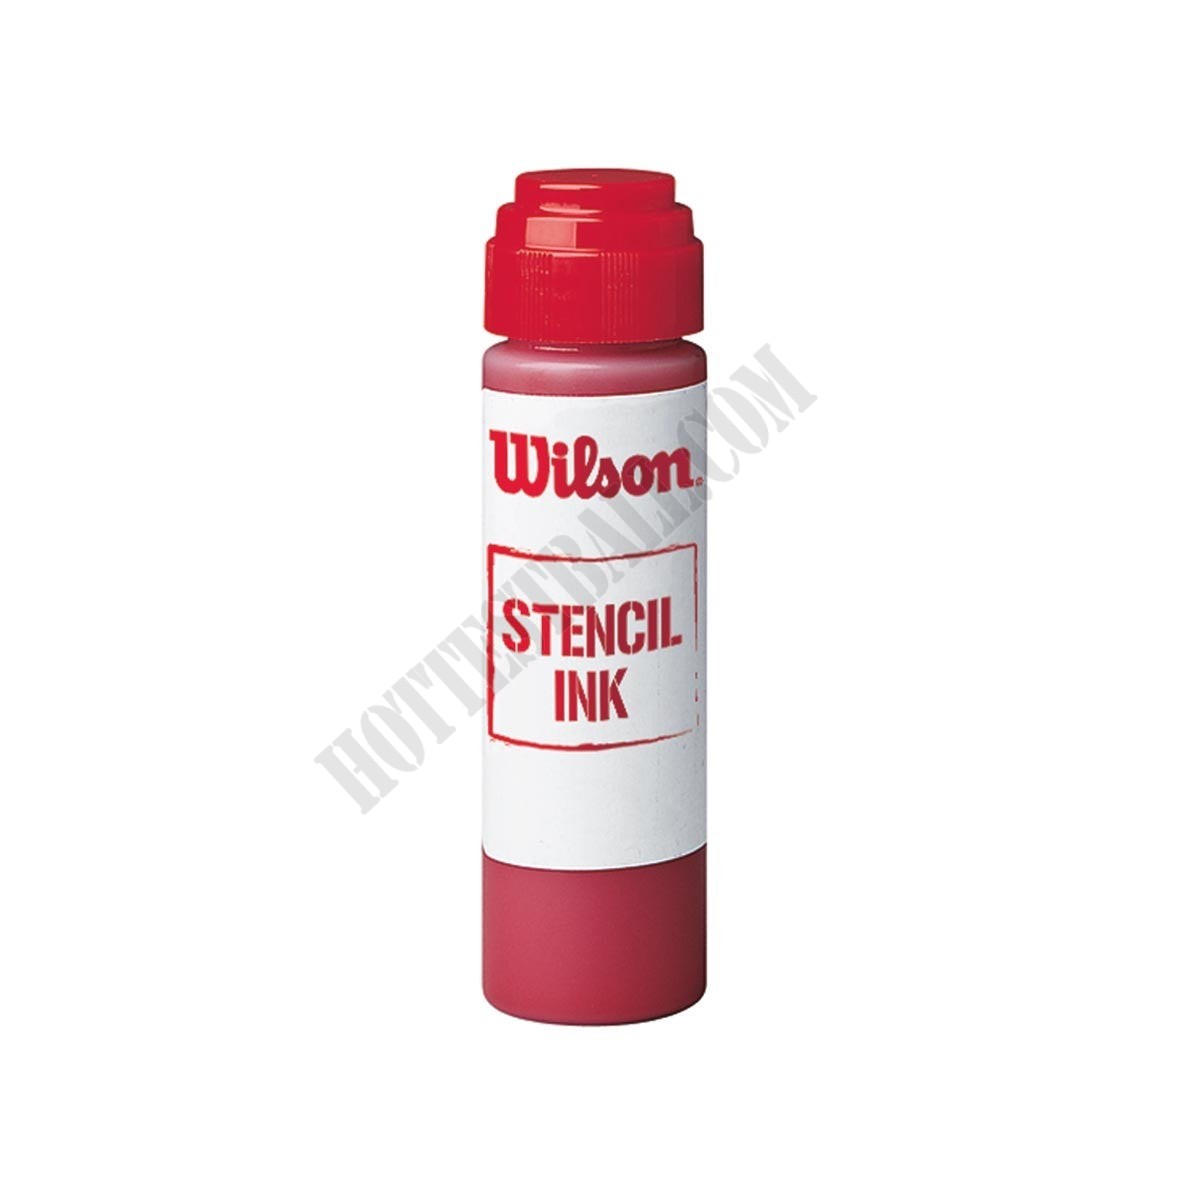 Stencil Ink - Wilson Discount Store - -0